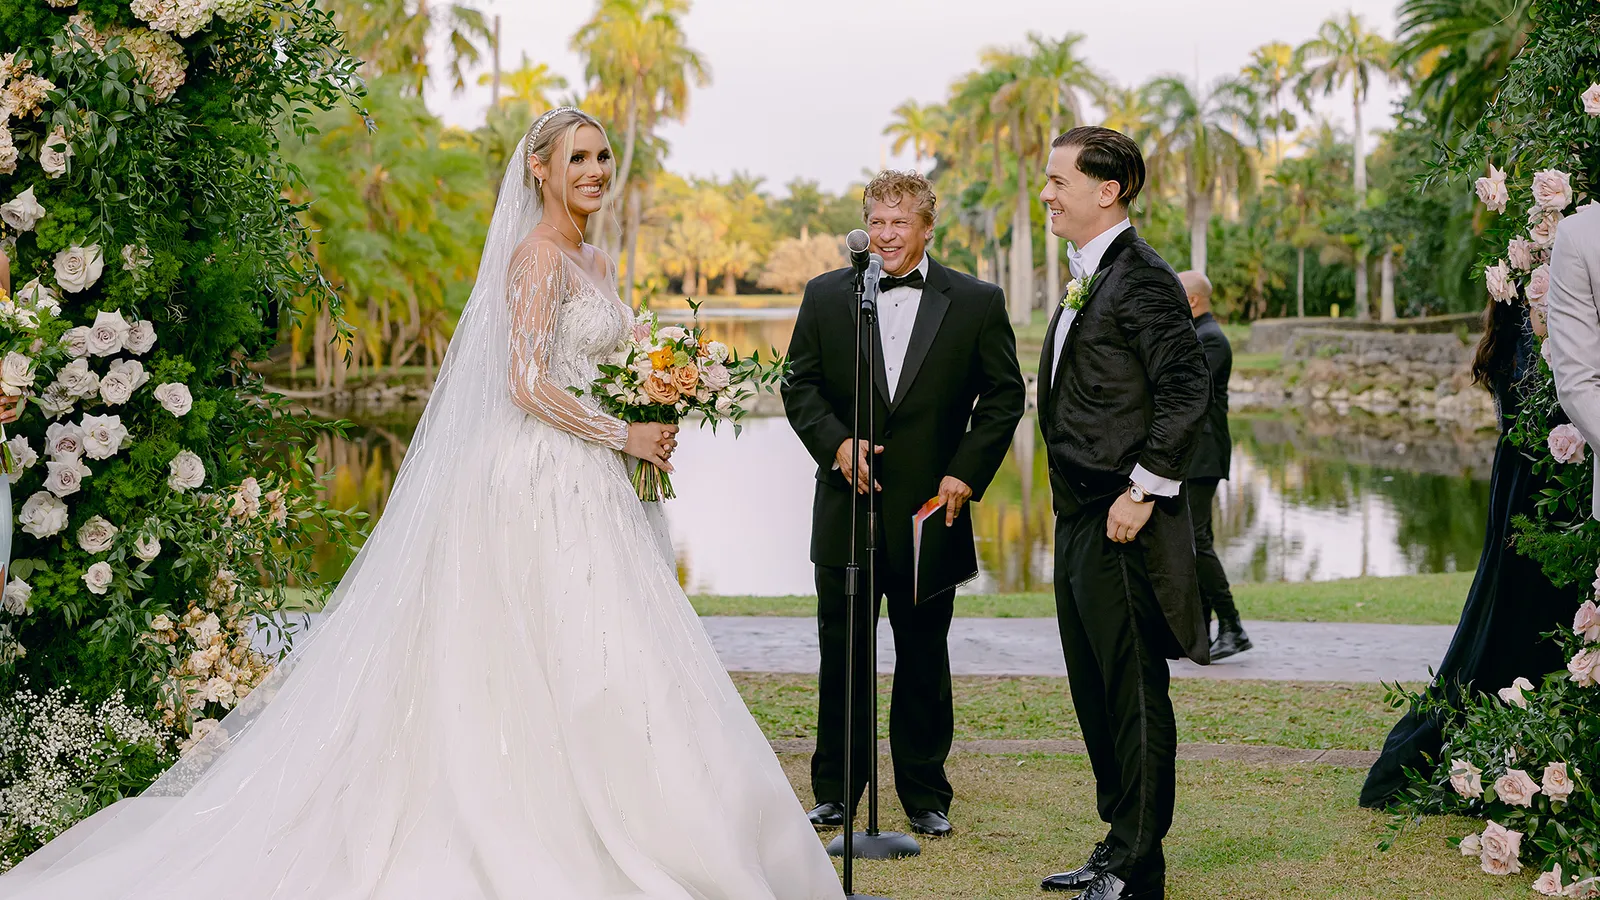 Lele Pons y Guaynaa confiesan las 7 cifras que le costó su boda en Miami